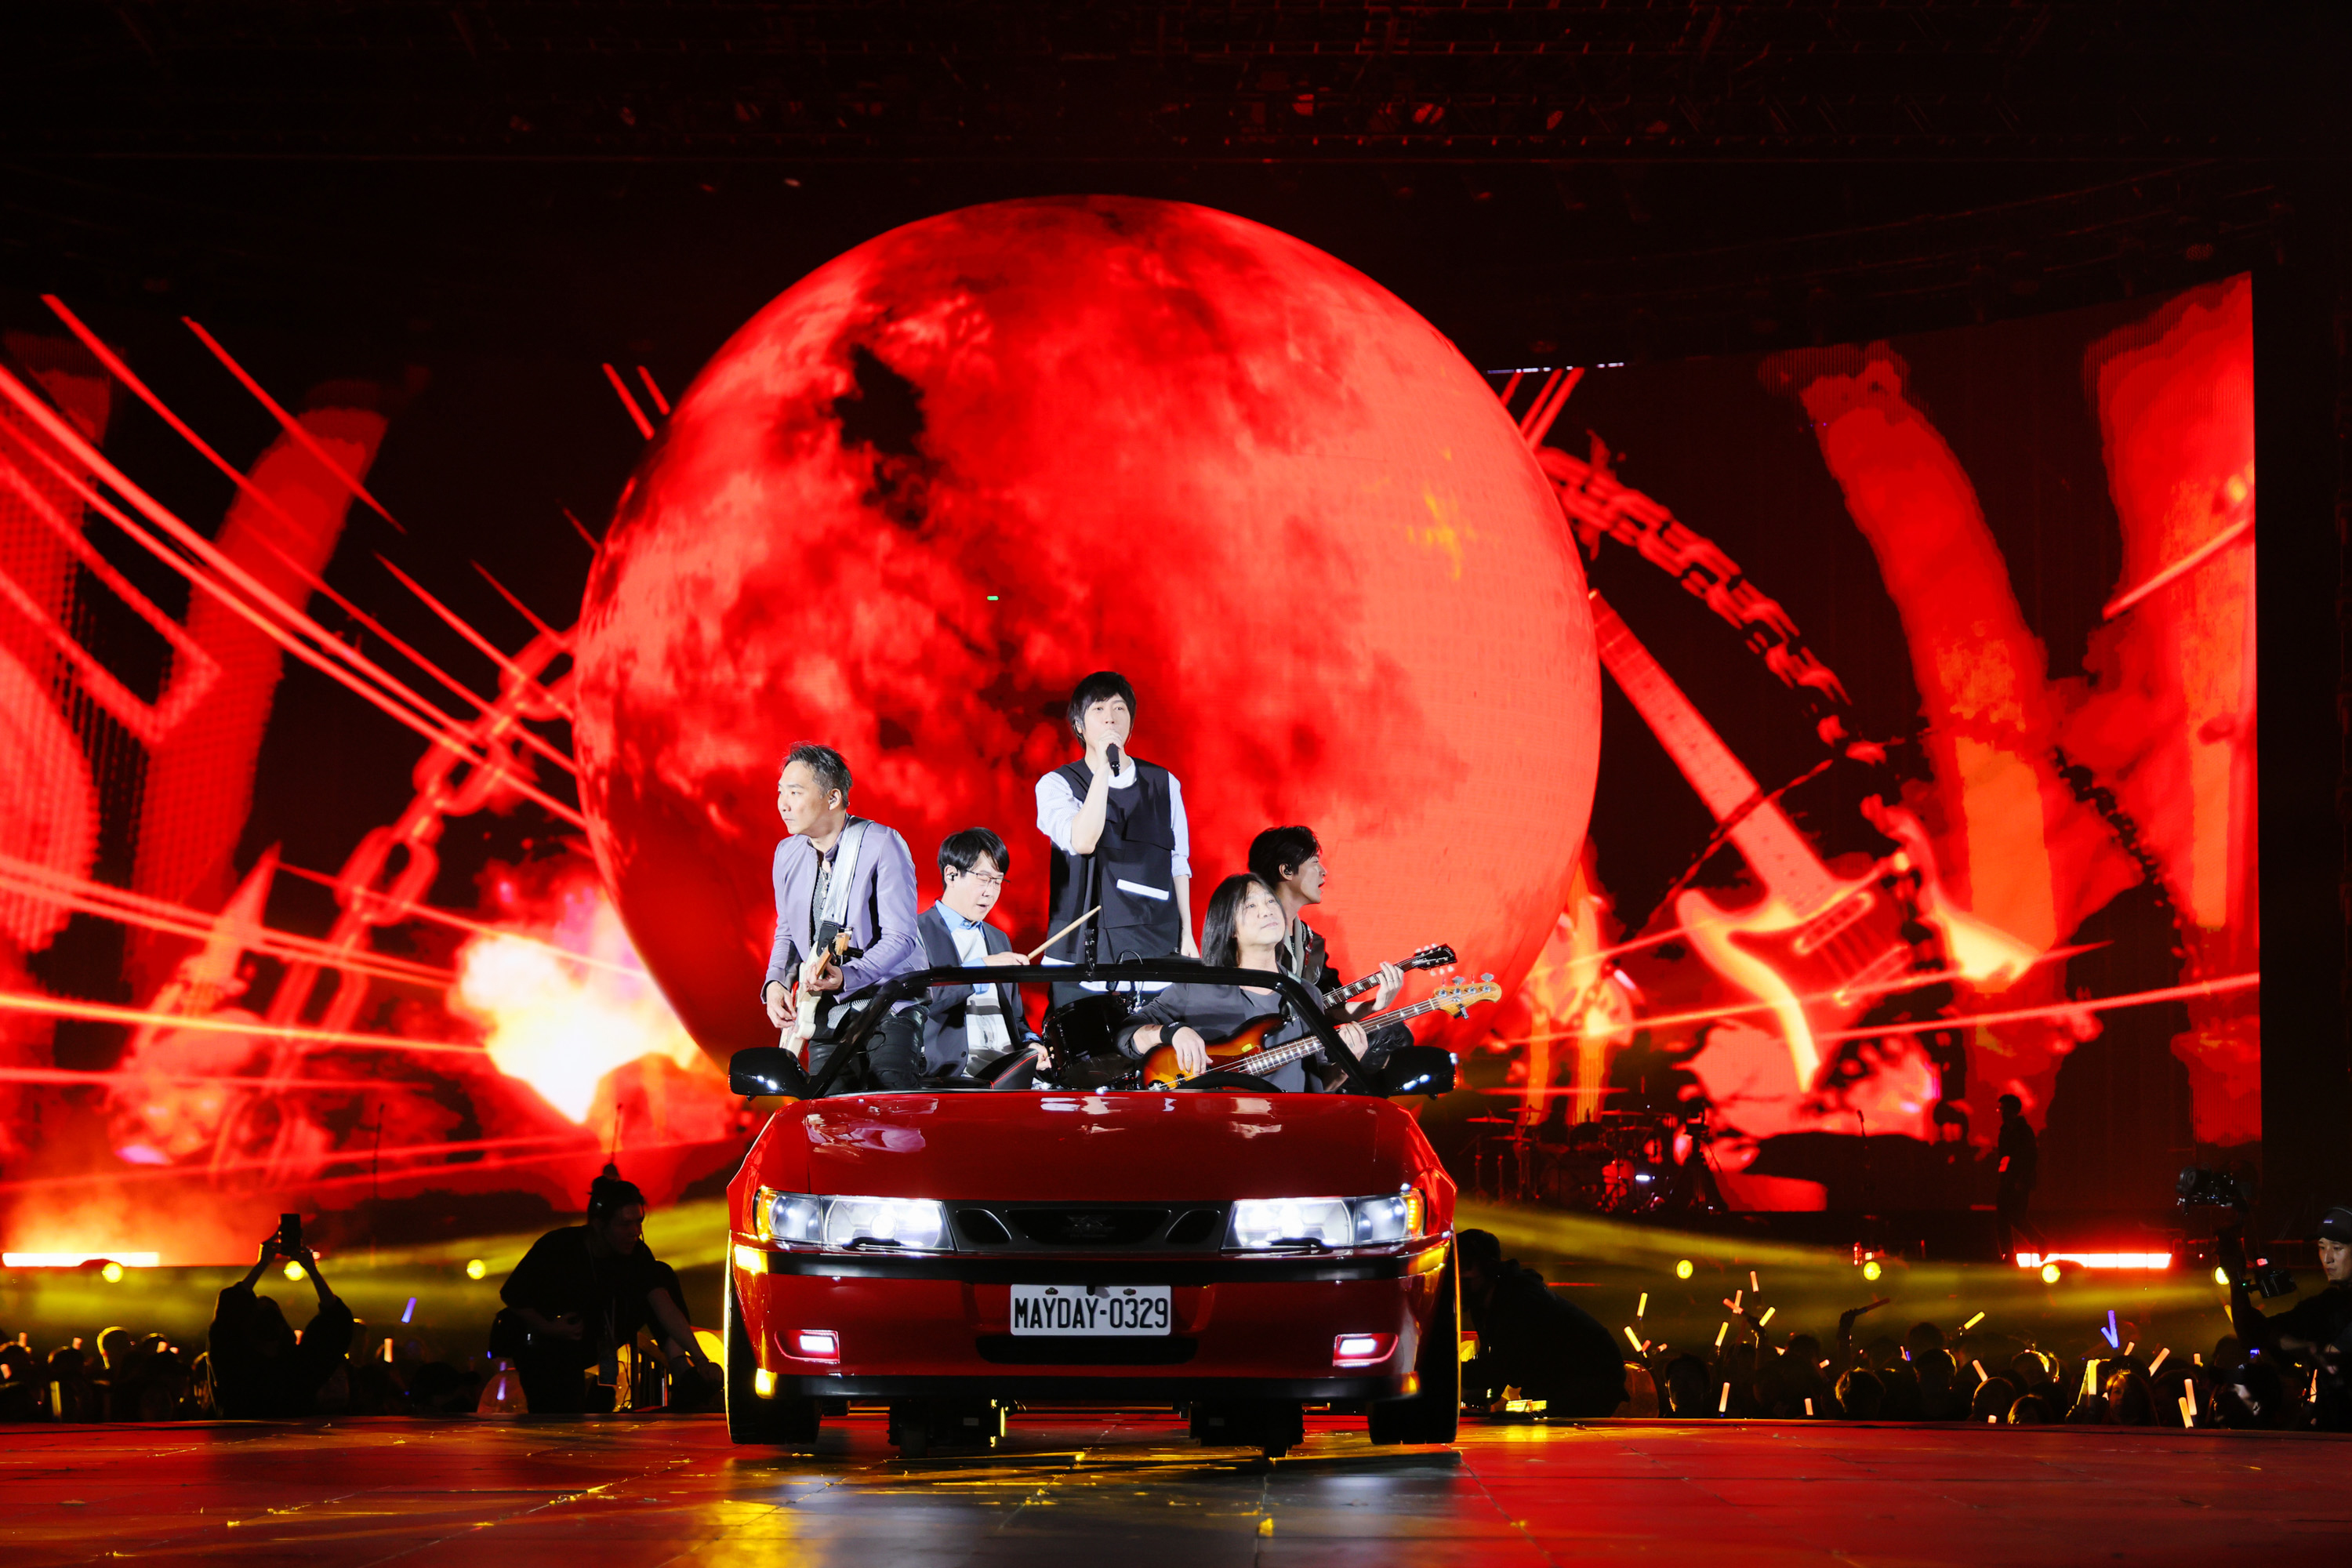 五月天乘坐復刻《恆星的恆心》演唱會的紅色跑車亮相。圖/相信音樂提供